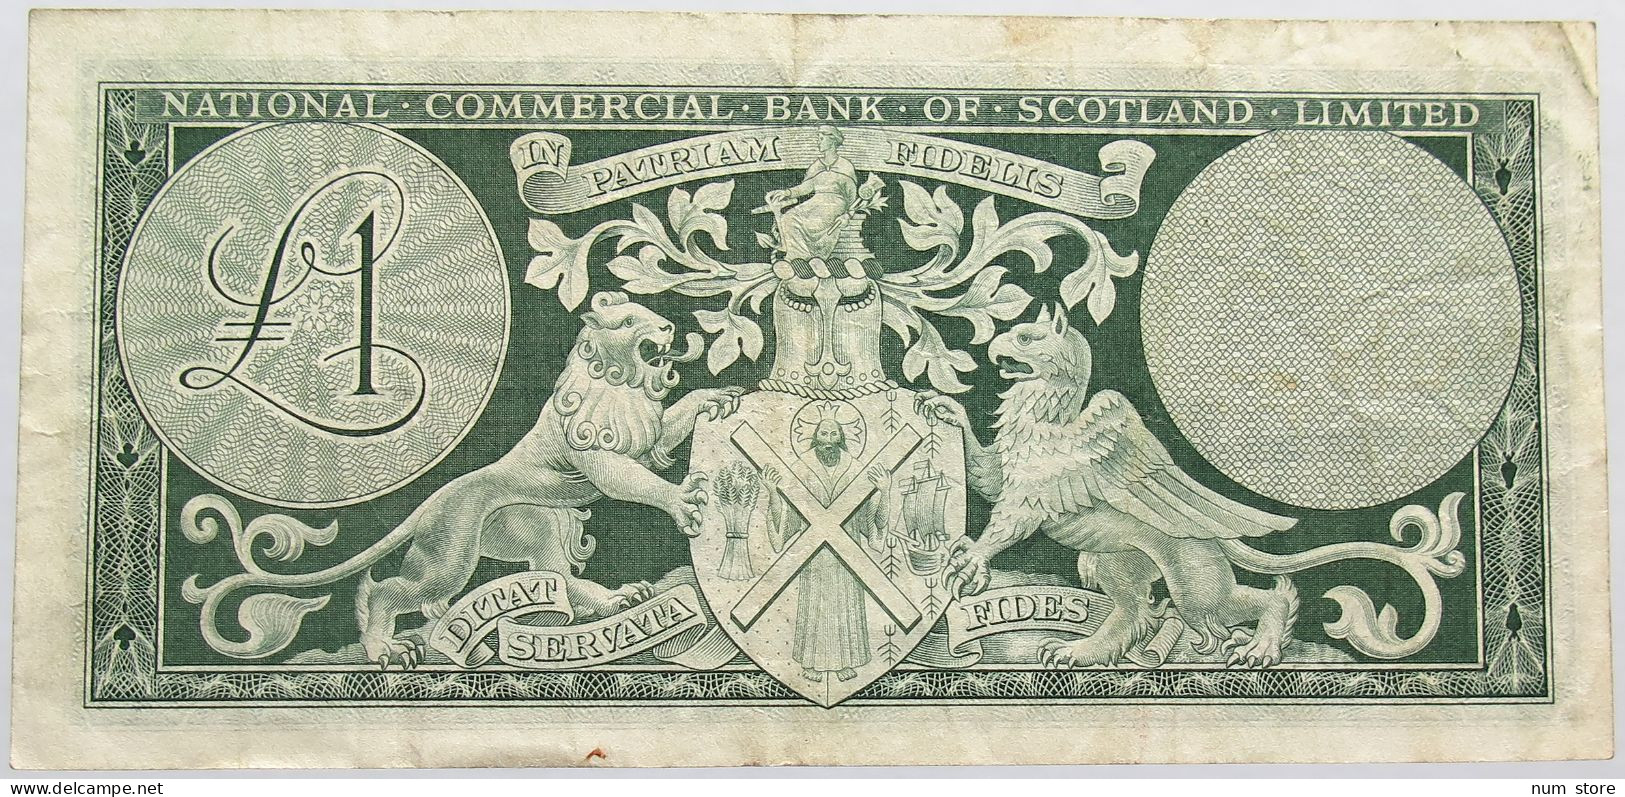 SCOTLAND 1 POUND 1961 #alb013 0203 - 1 Pound